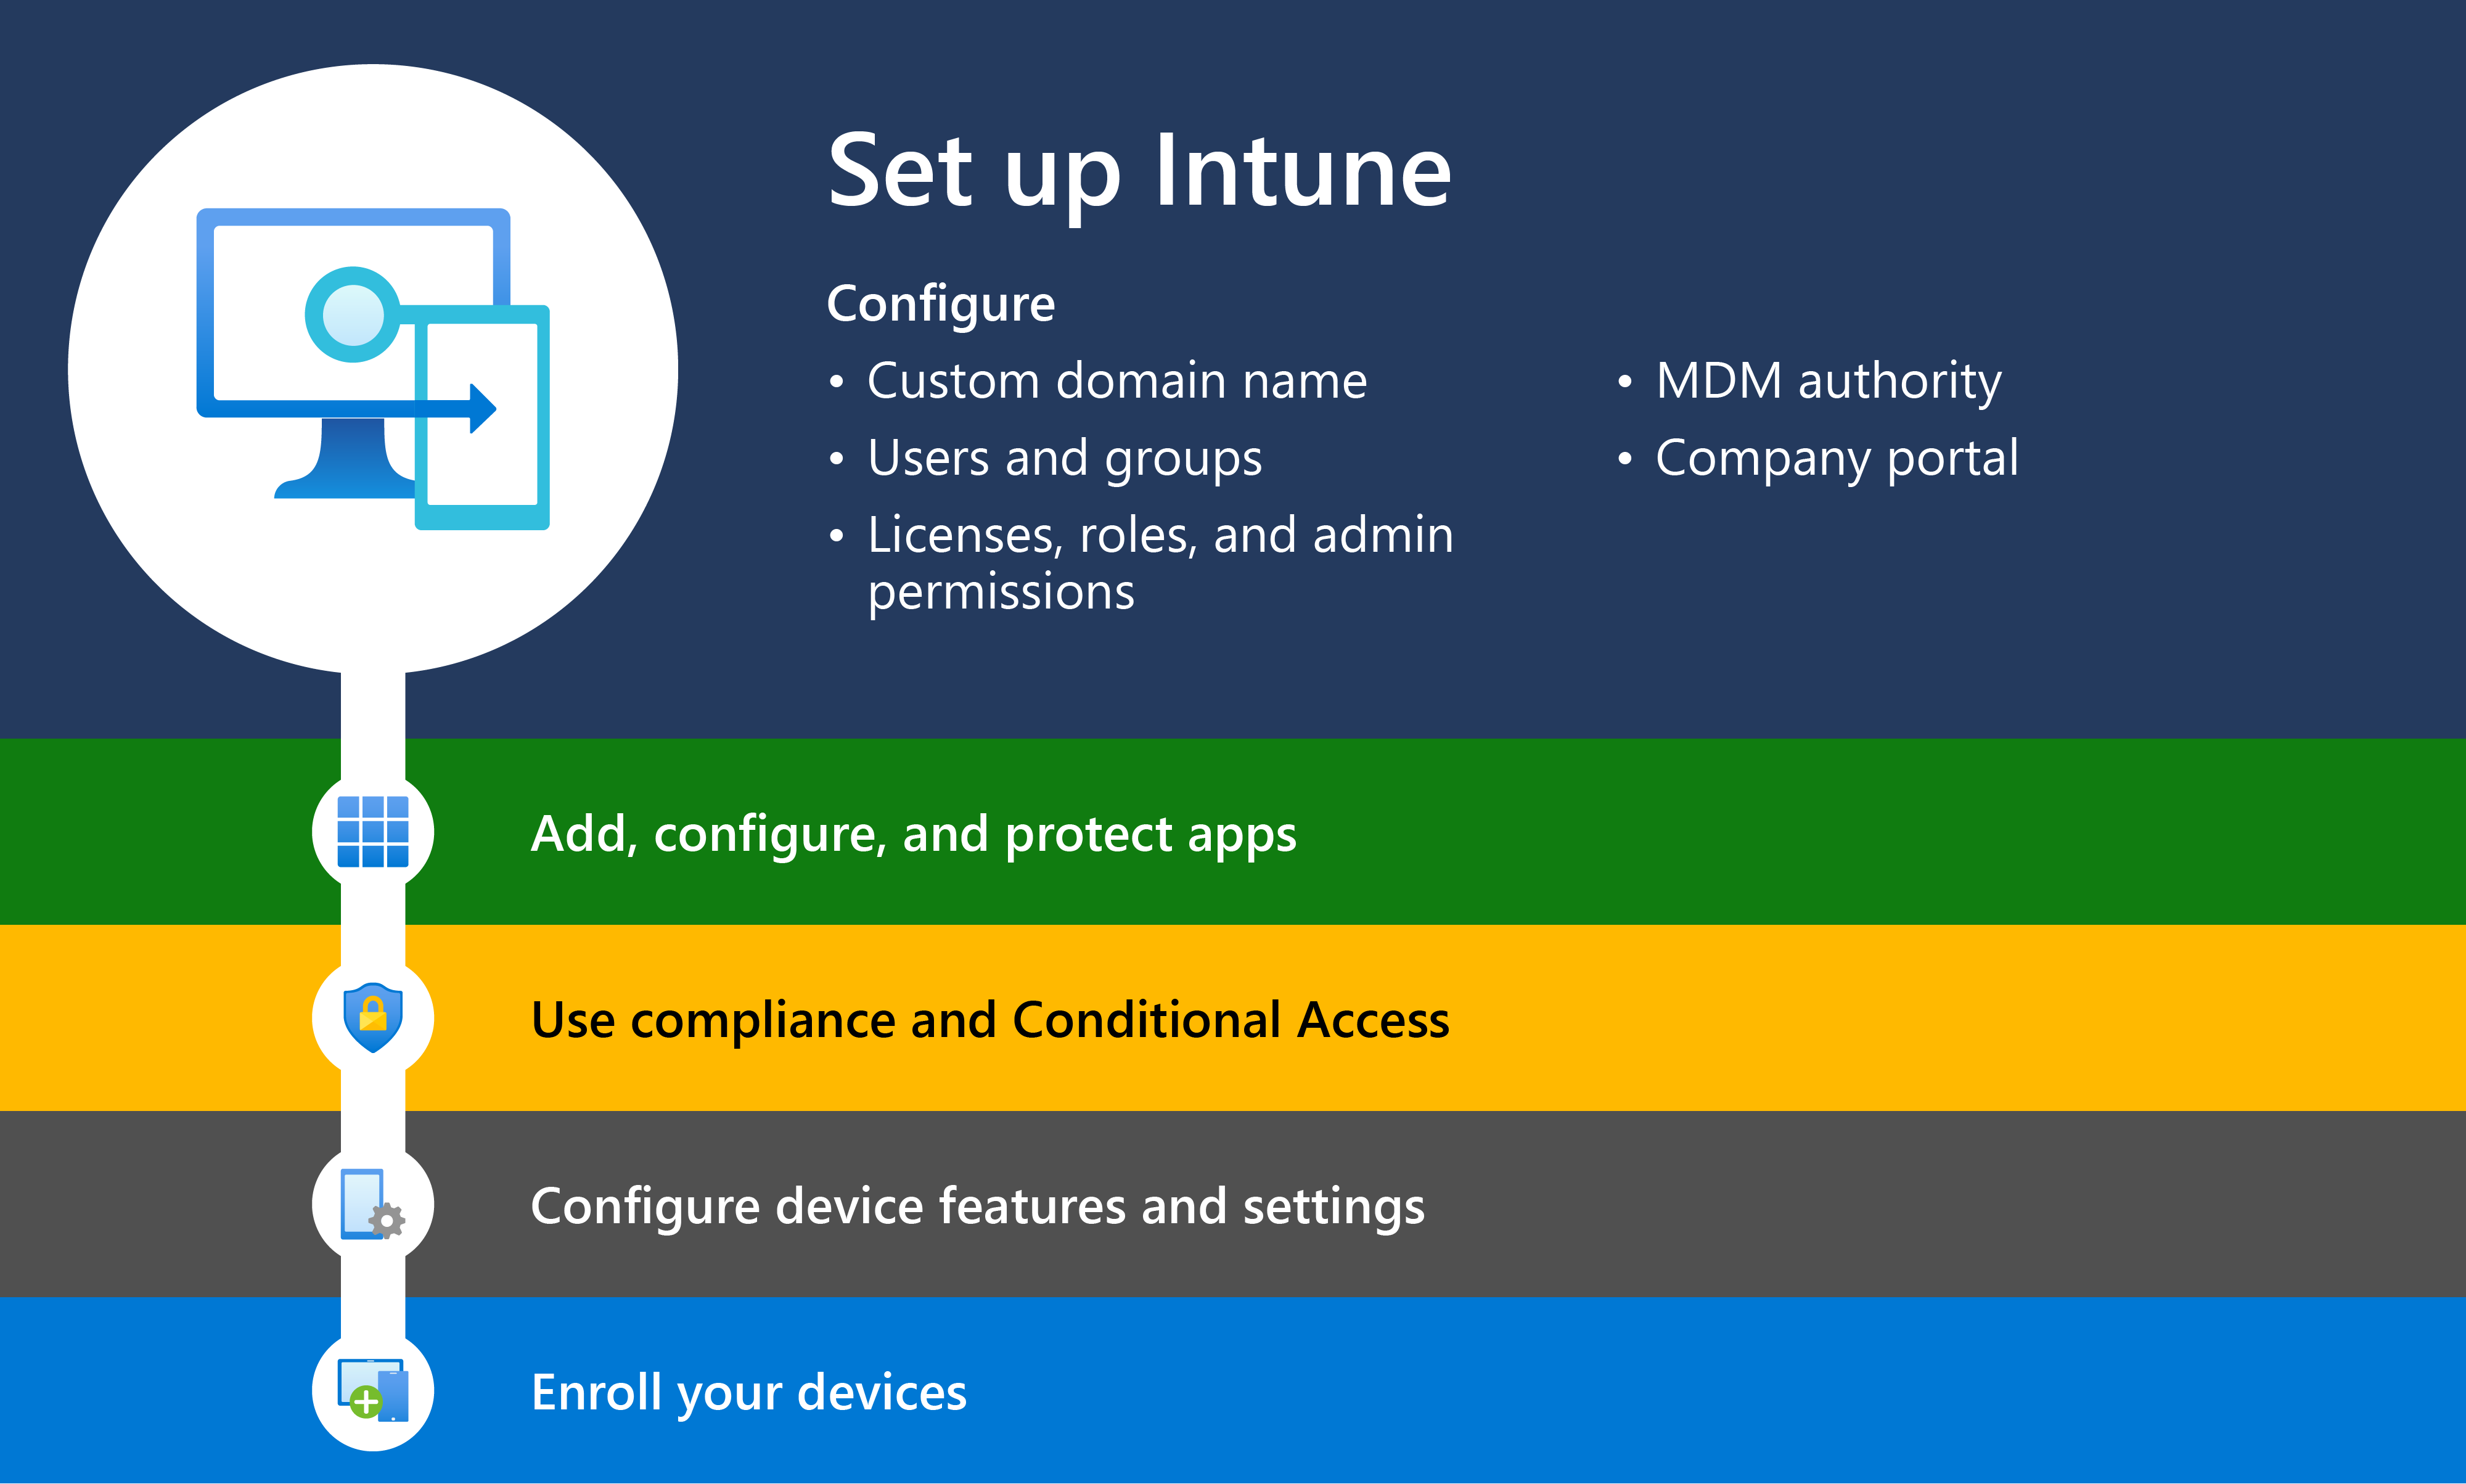 显示 Intune 入门的示意图，步骤 1 是设置Microsoft Intune。